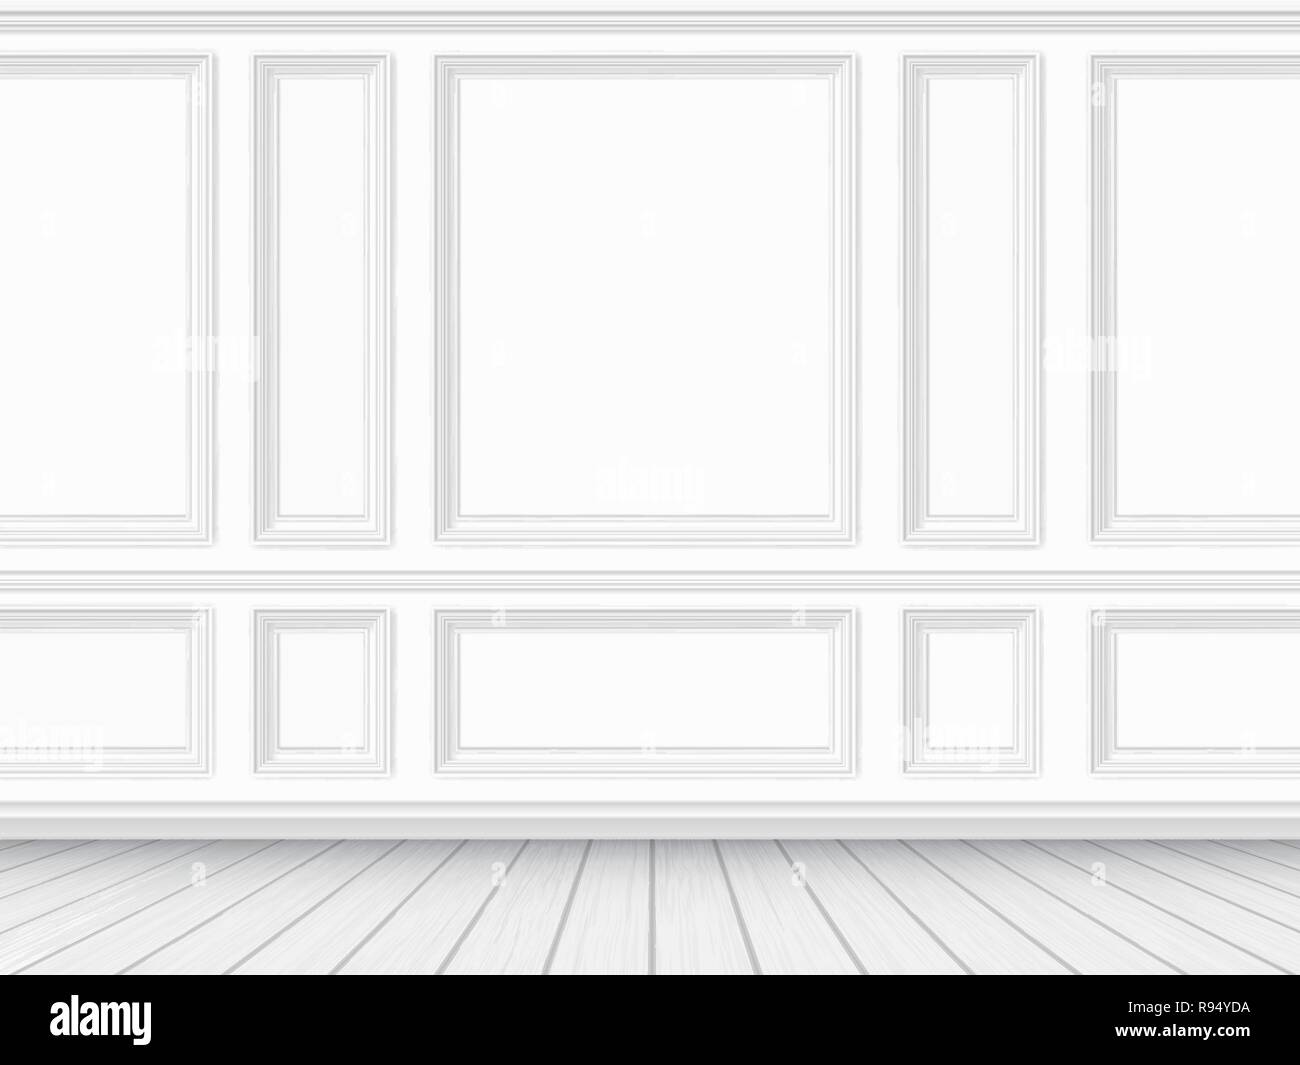 Klassische Einrichtung des Wohnzimmers. Parkettboden und weiße Wand mit molding Panels eingerichtet. Vektor Sondermaßnahmen realistische Abbildung. Stock Vektor